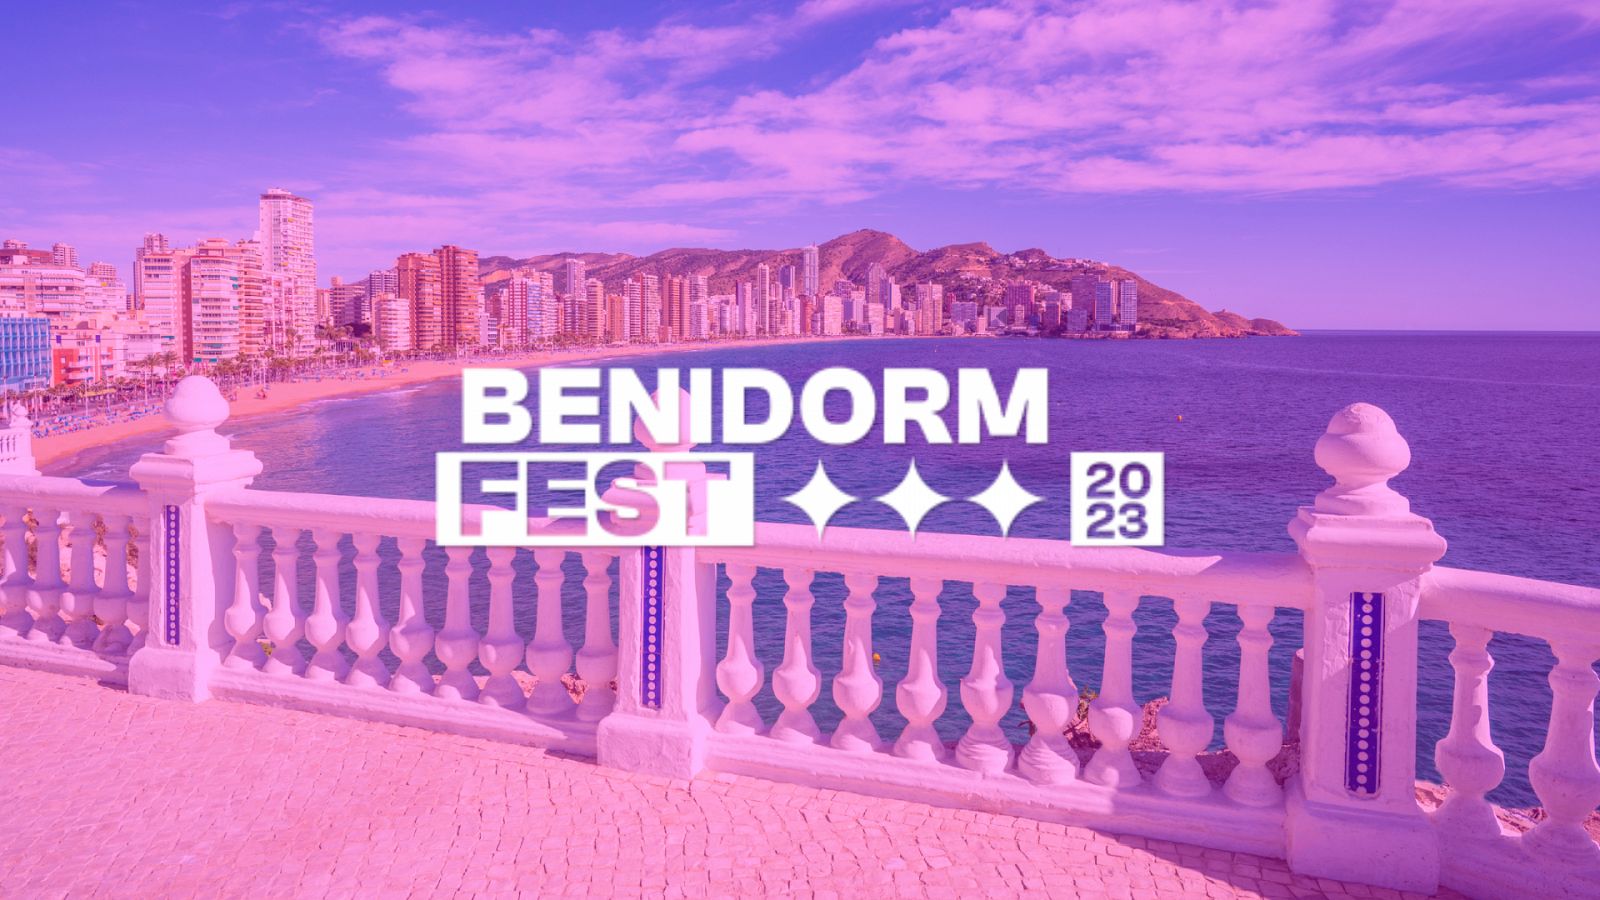 Benidorm Fest: Mesa redonda con expertos eurovisivos